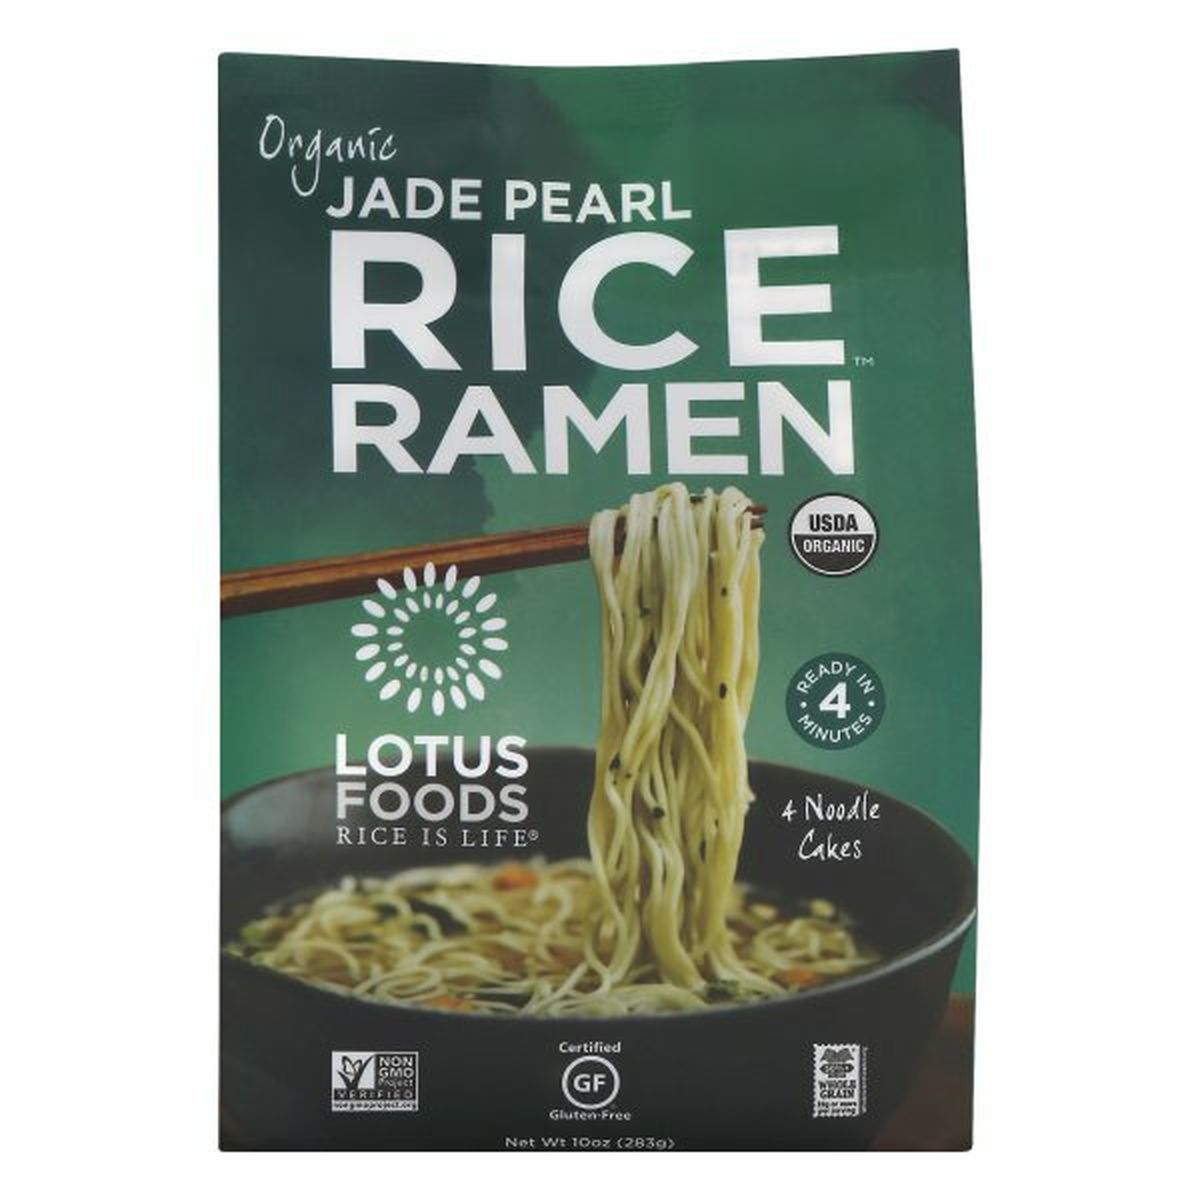 Calories in Lotus Foods Rice Ramen, Organic, Jade Pearl